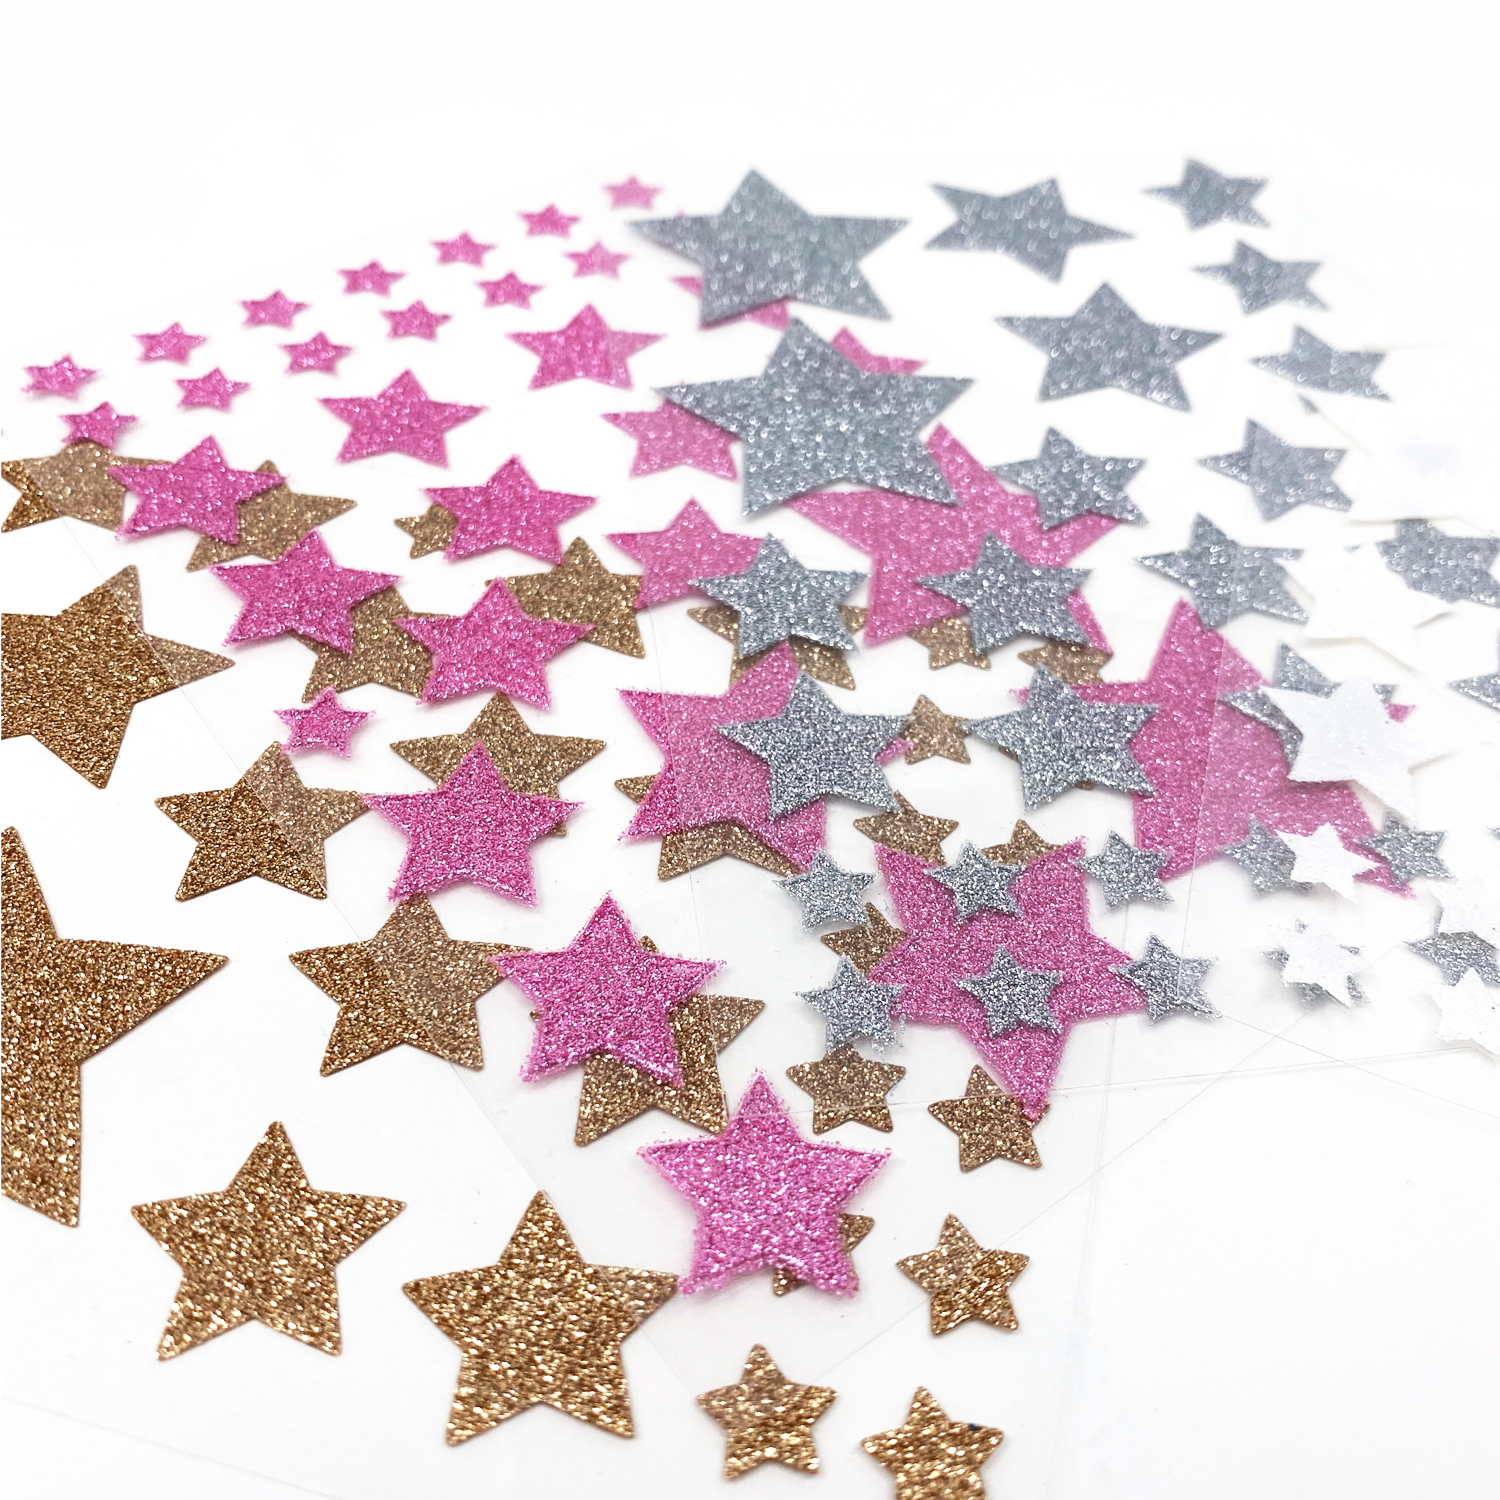 64 Sterne Sticker Stern Aufkleber mit Glitzereffekt für